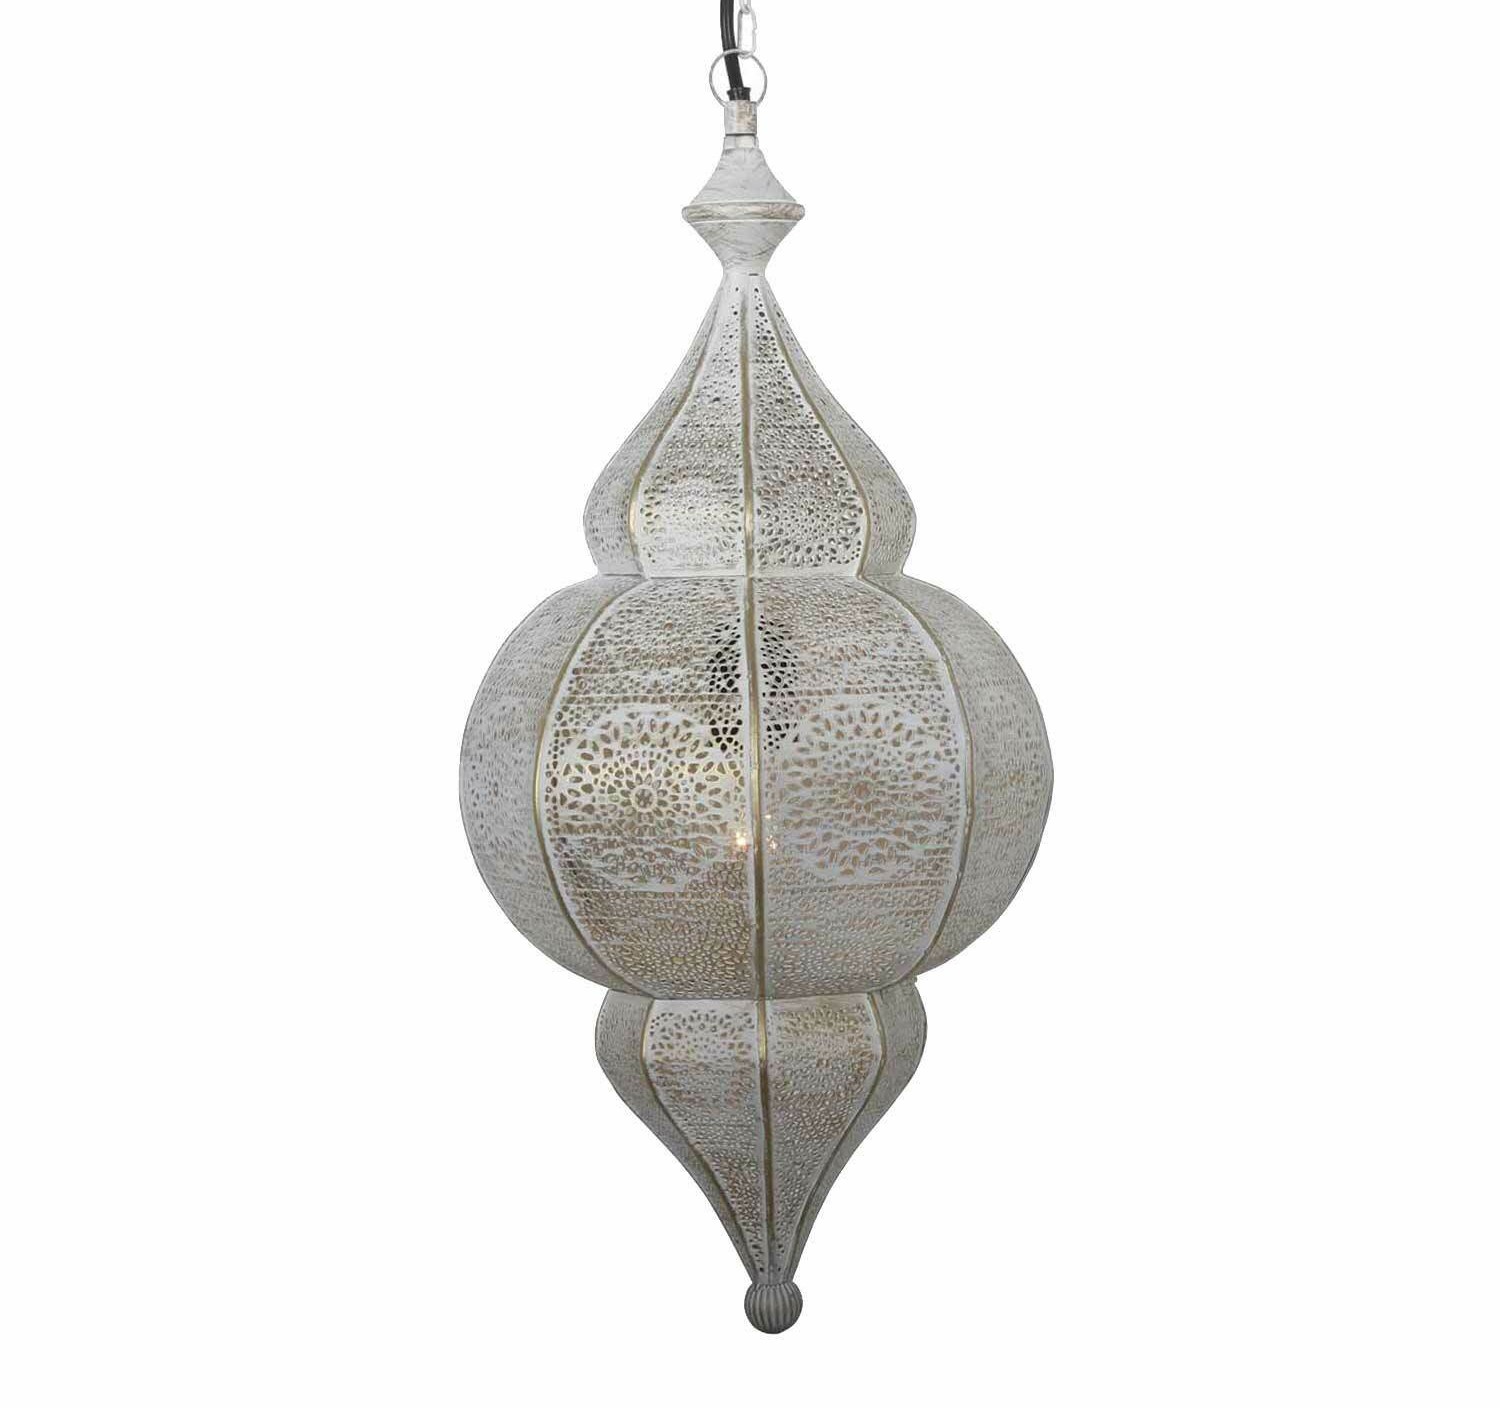 Orientalische Lampe Pendelleuchte Design Weiss Gold 